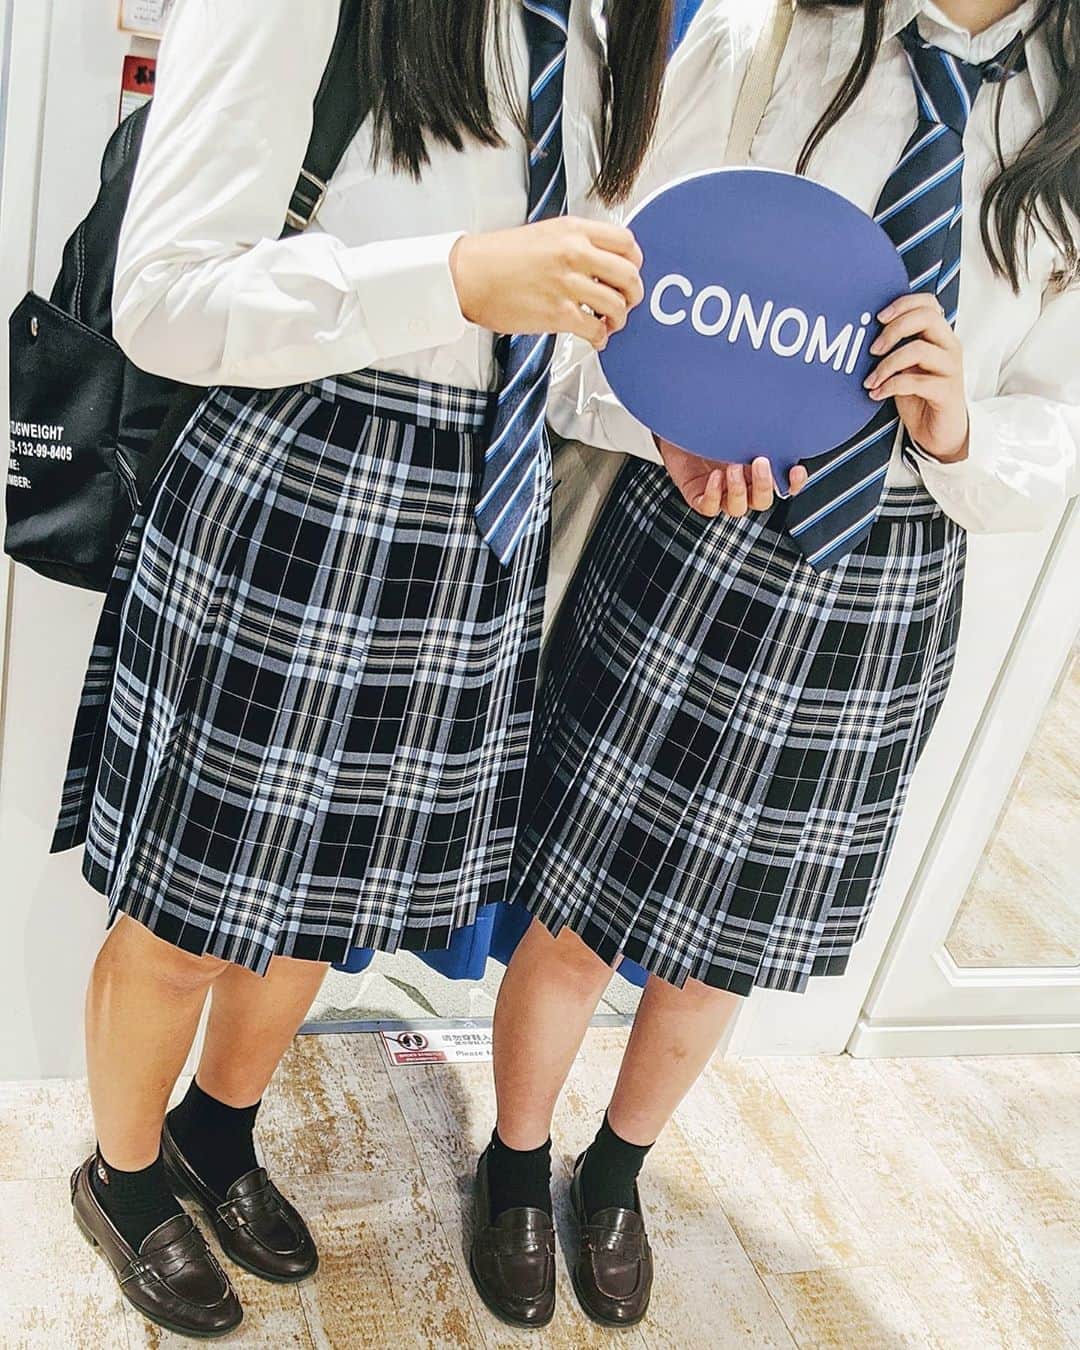 制服専門店CONOMiのインスタグラム